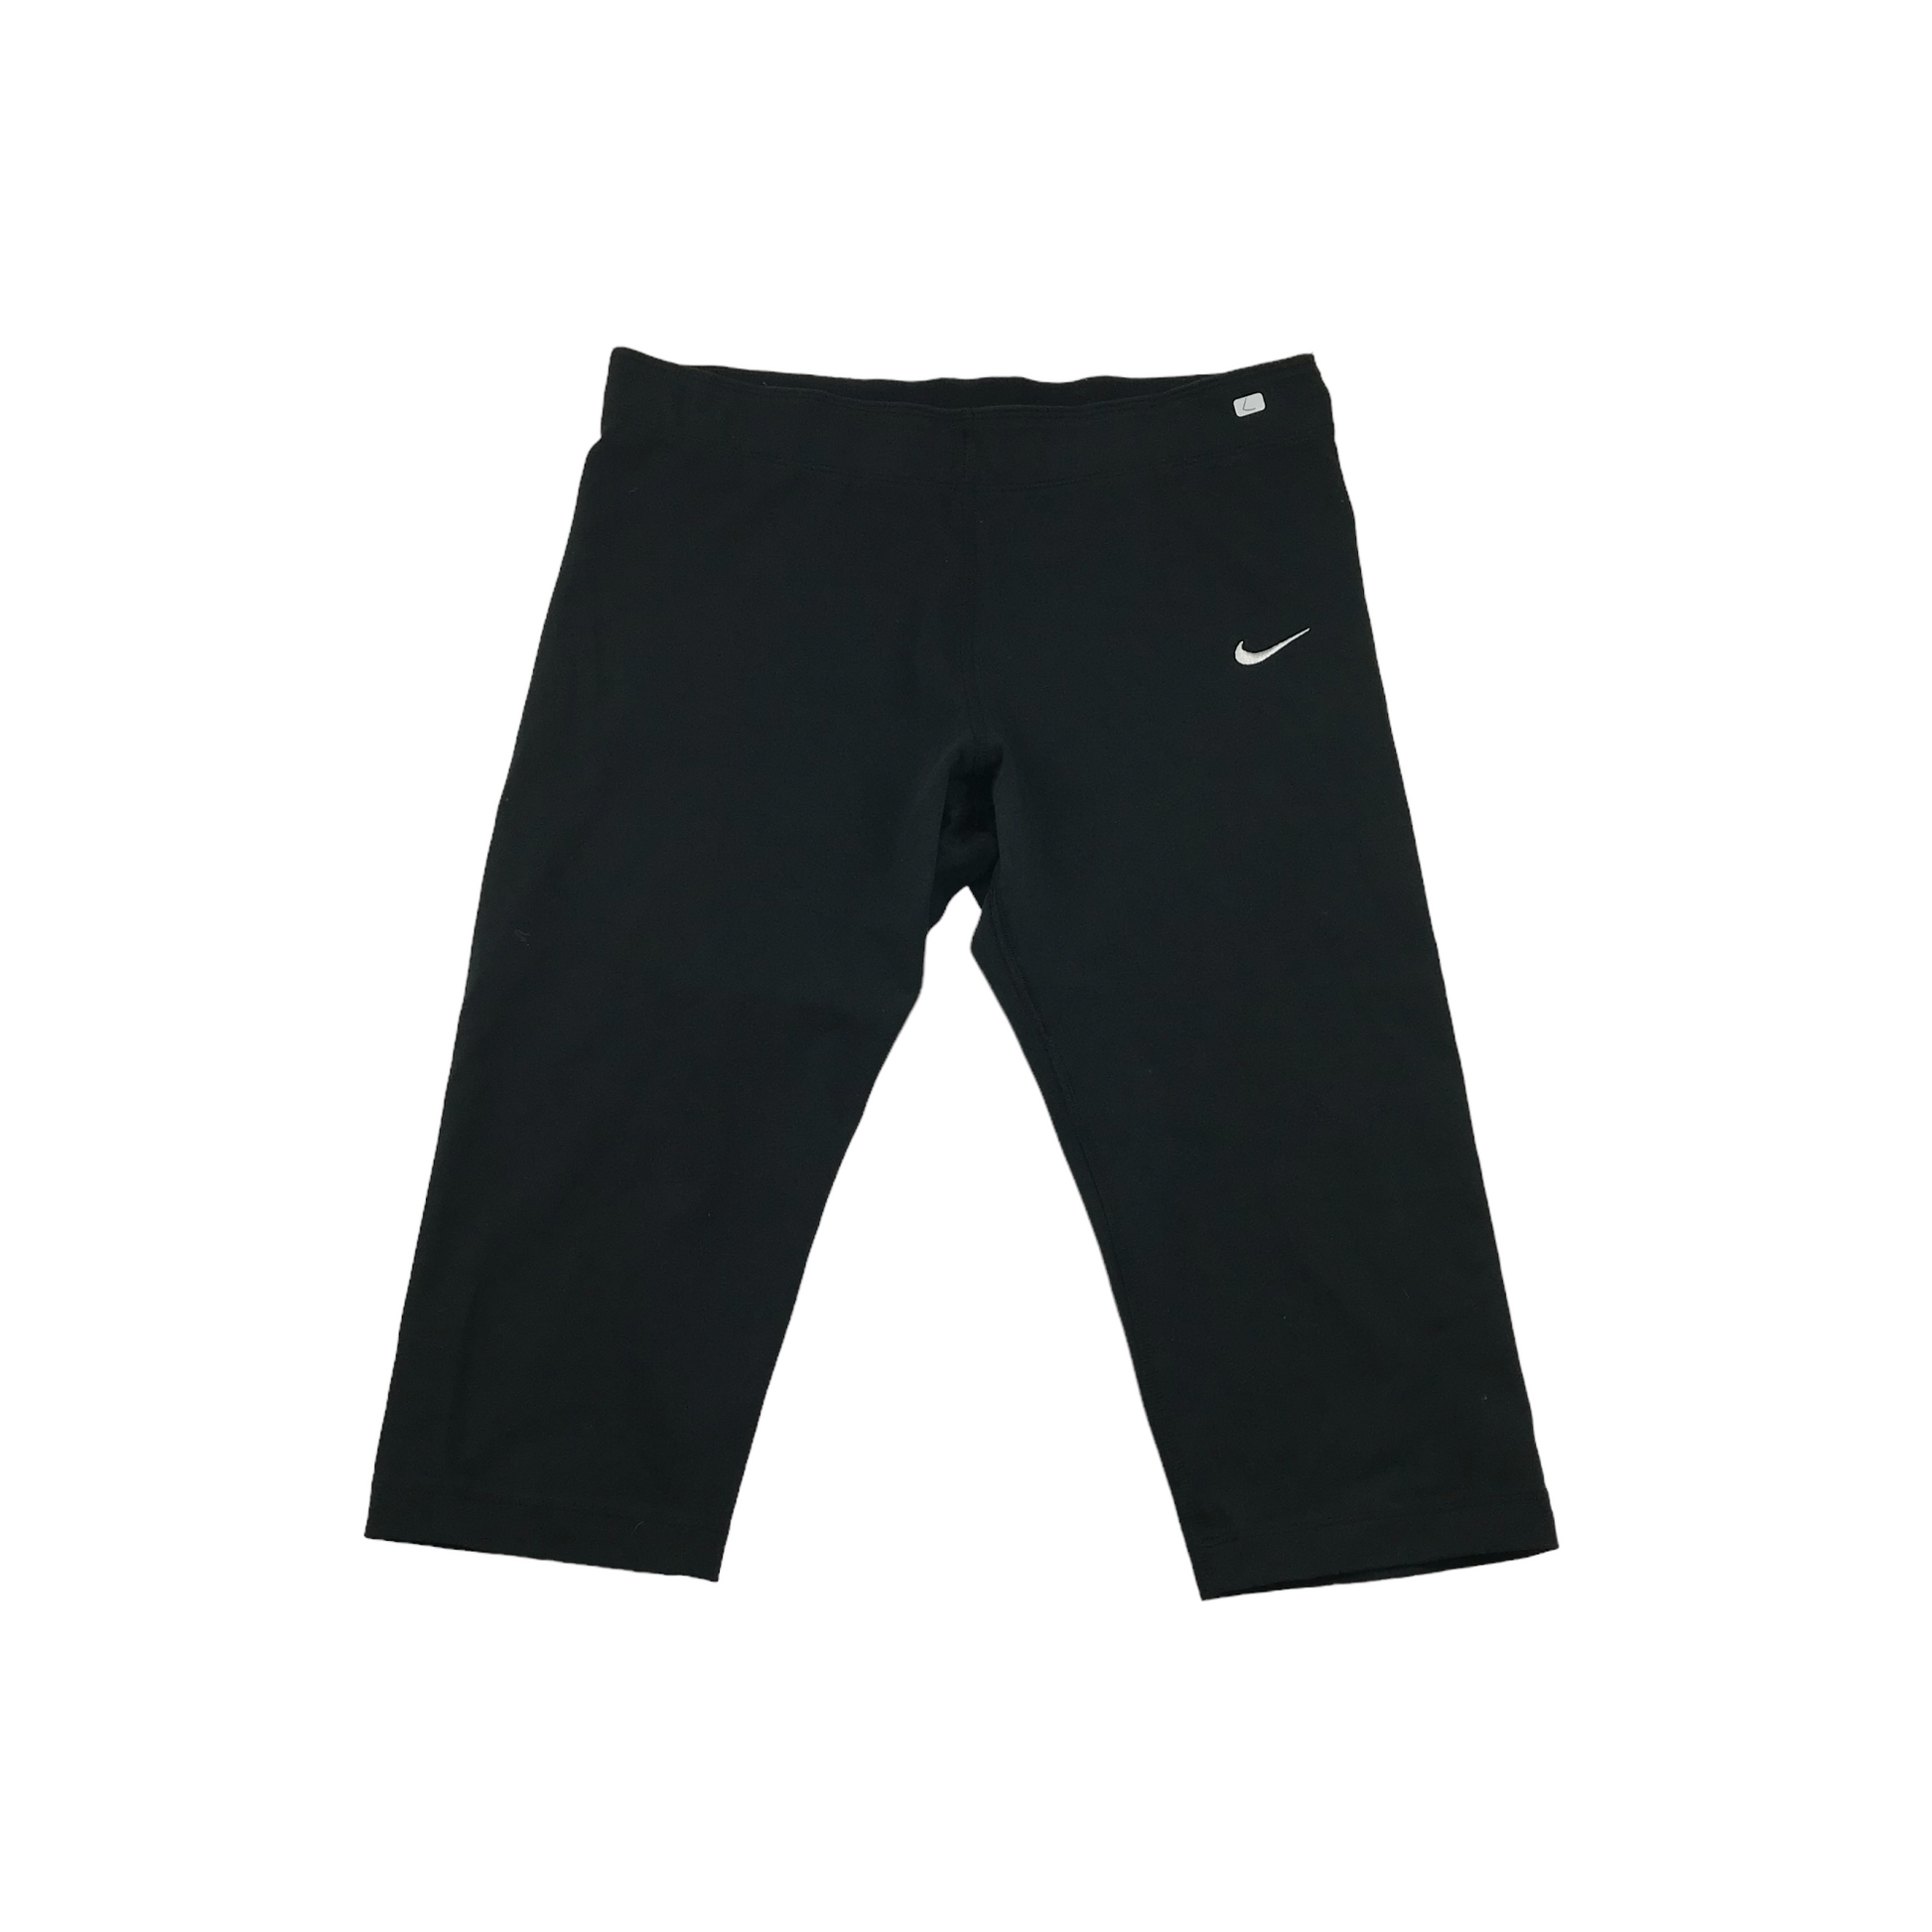 Nike Black 3/4 Sports Leggings Women's Size L – ApparelXchange CIC